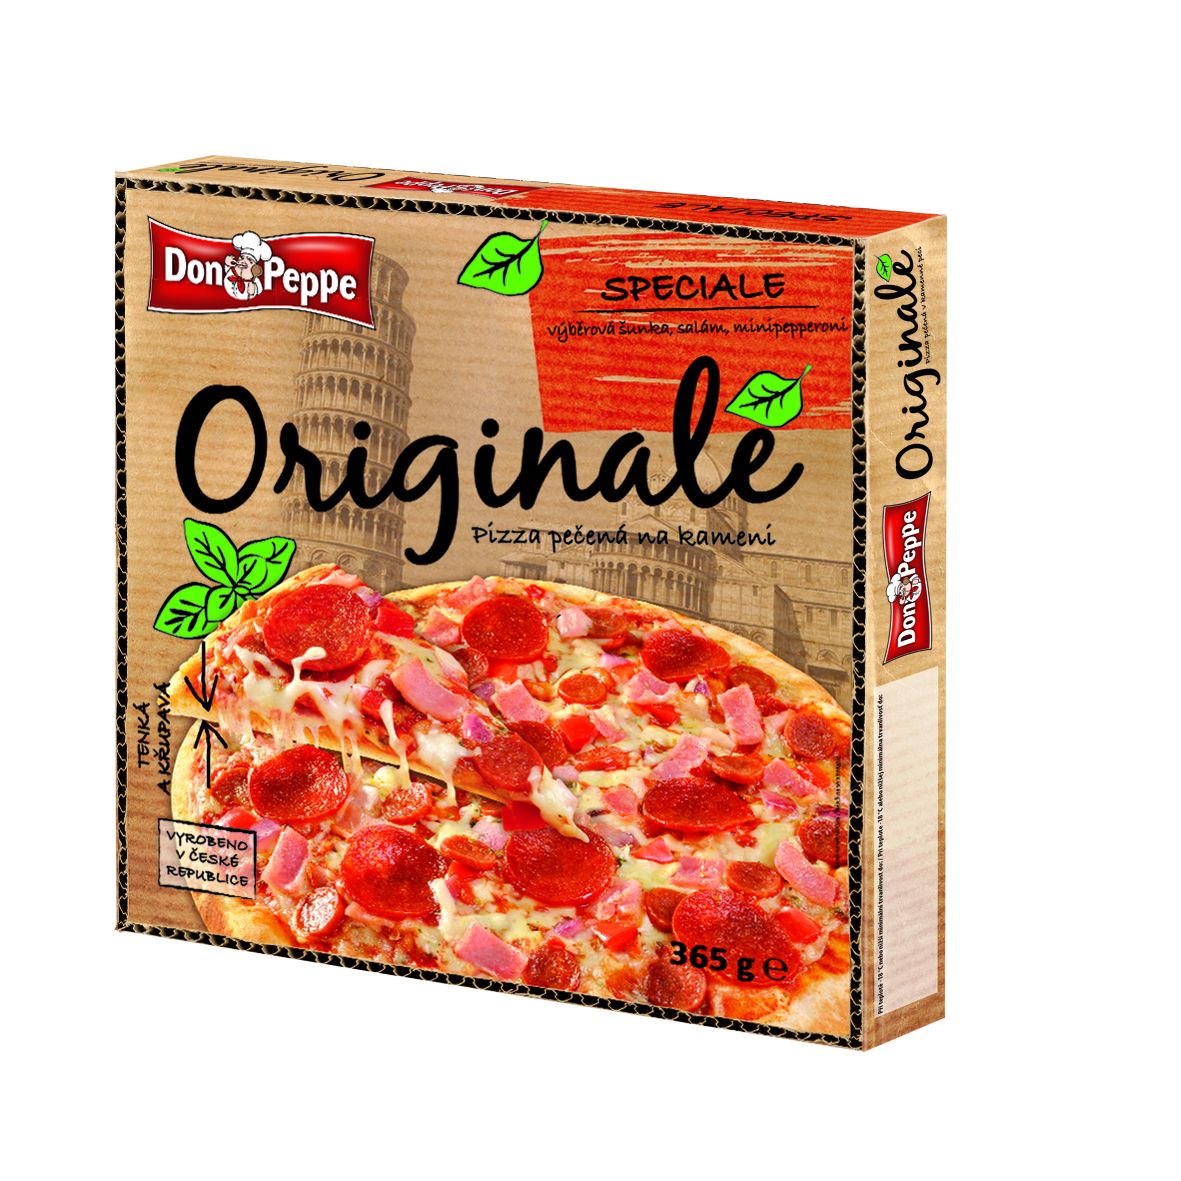 Don Peppe Originale pizza Speciale 365 g